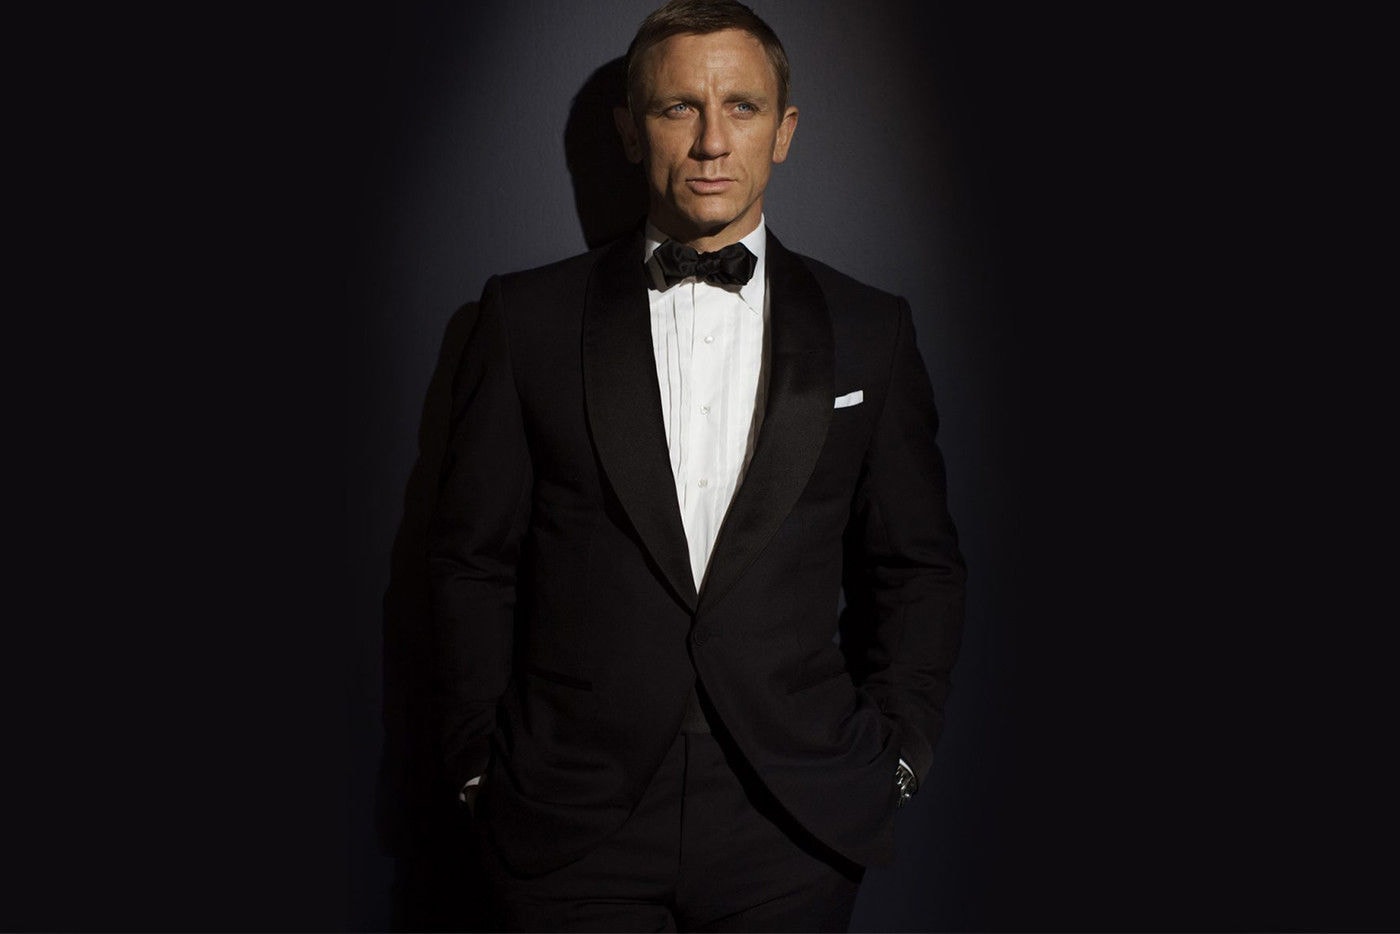 第 25 部《007》電影導演 Danny Boyle 因與 Daniel Craig 意見相左而退出